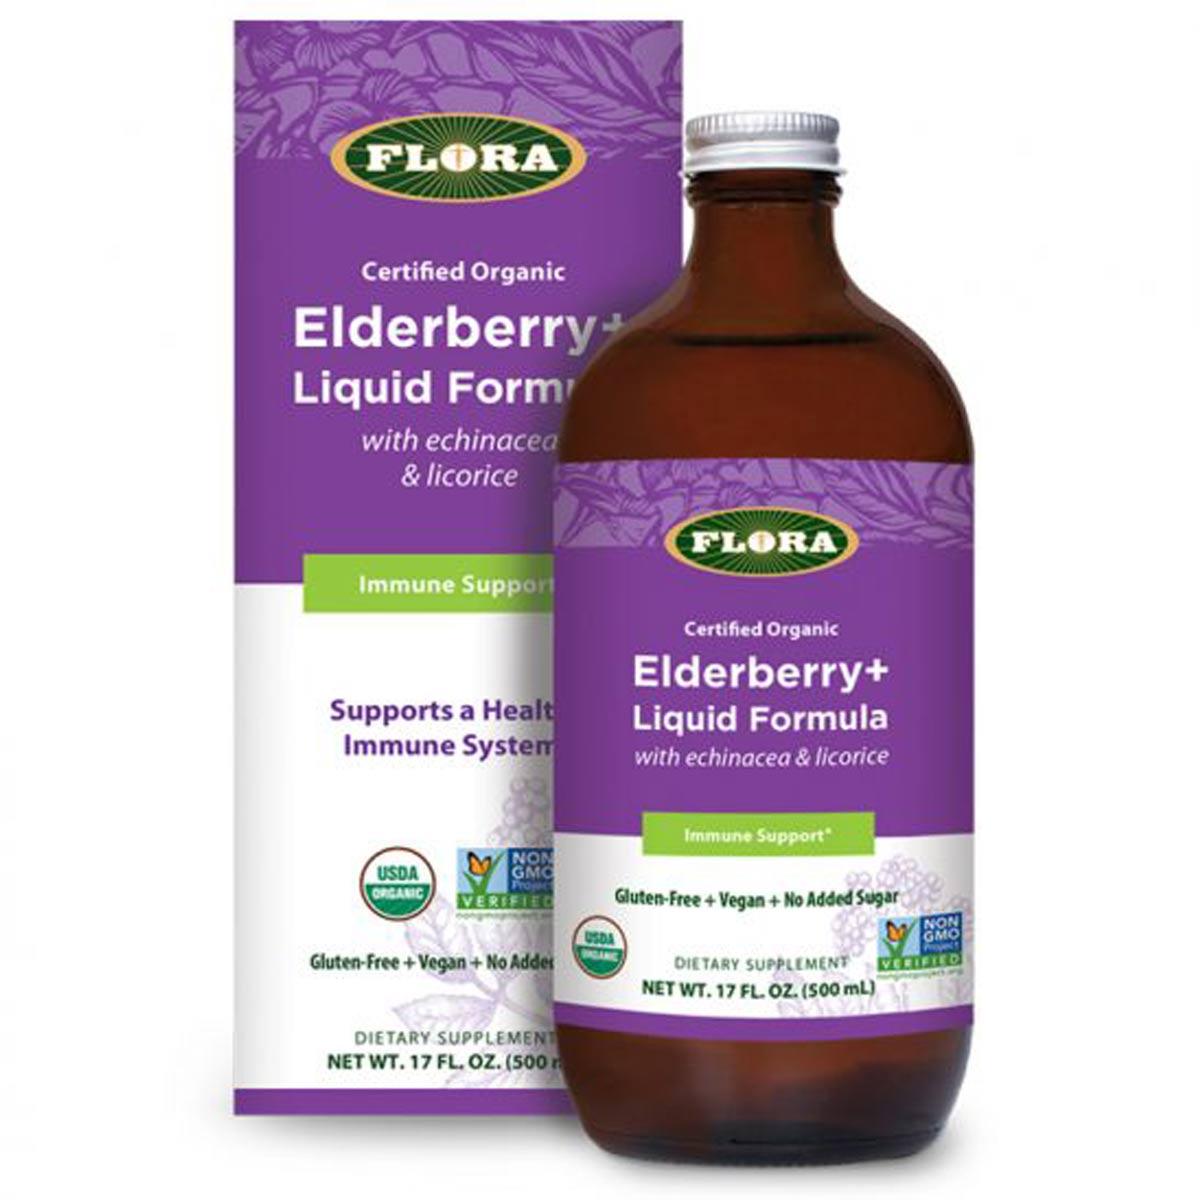 Primary image of Elderberry+ Immune Support Liquid